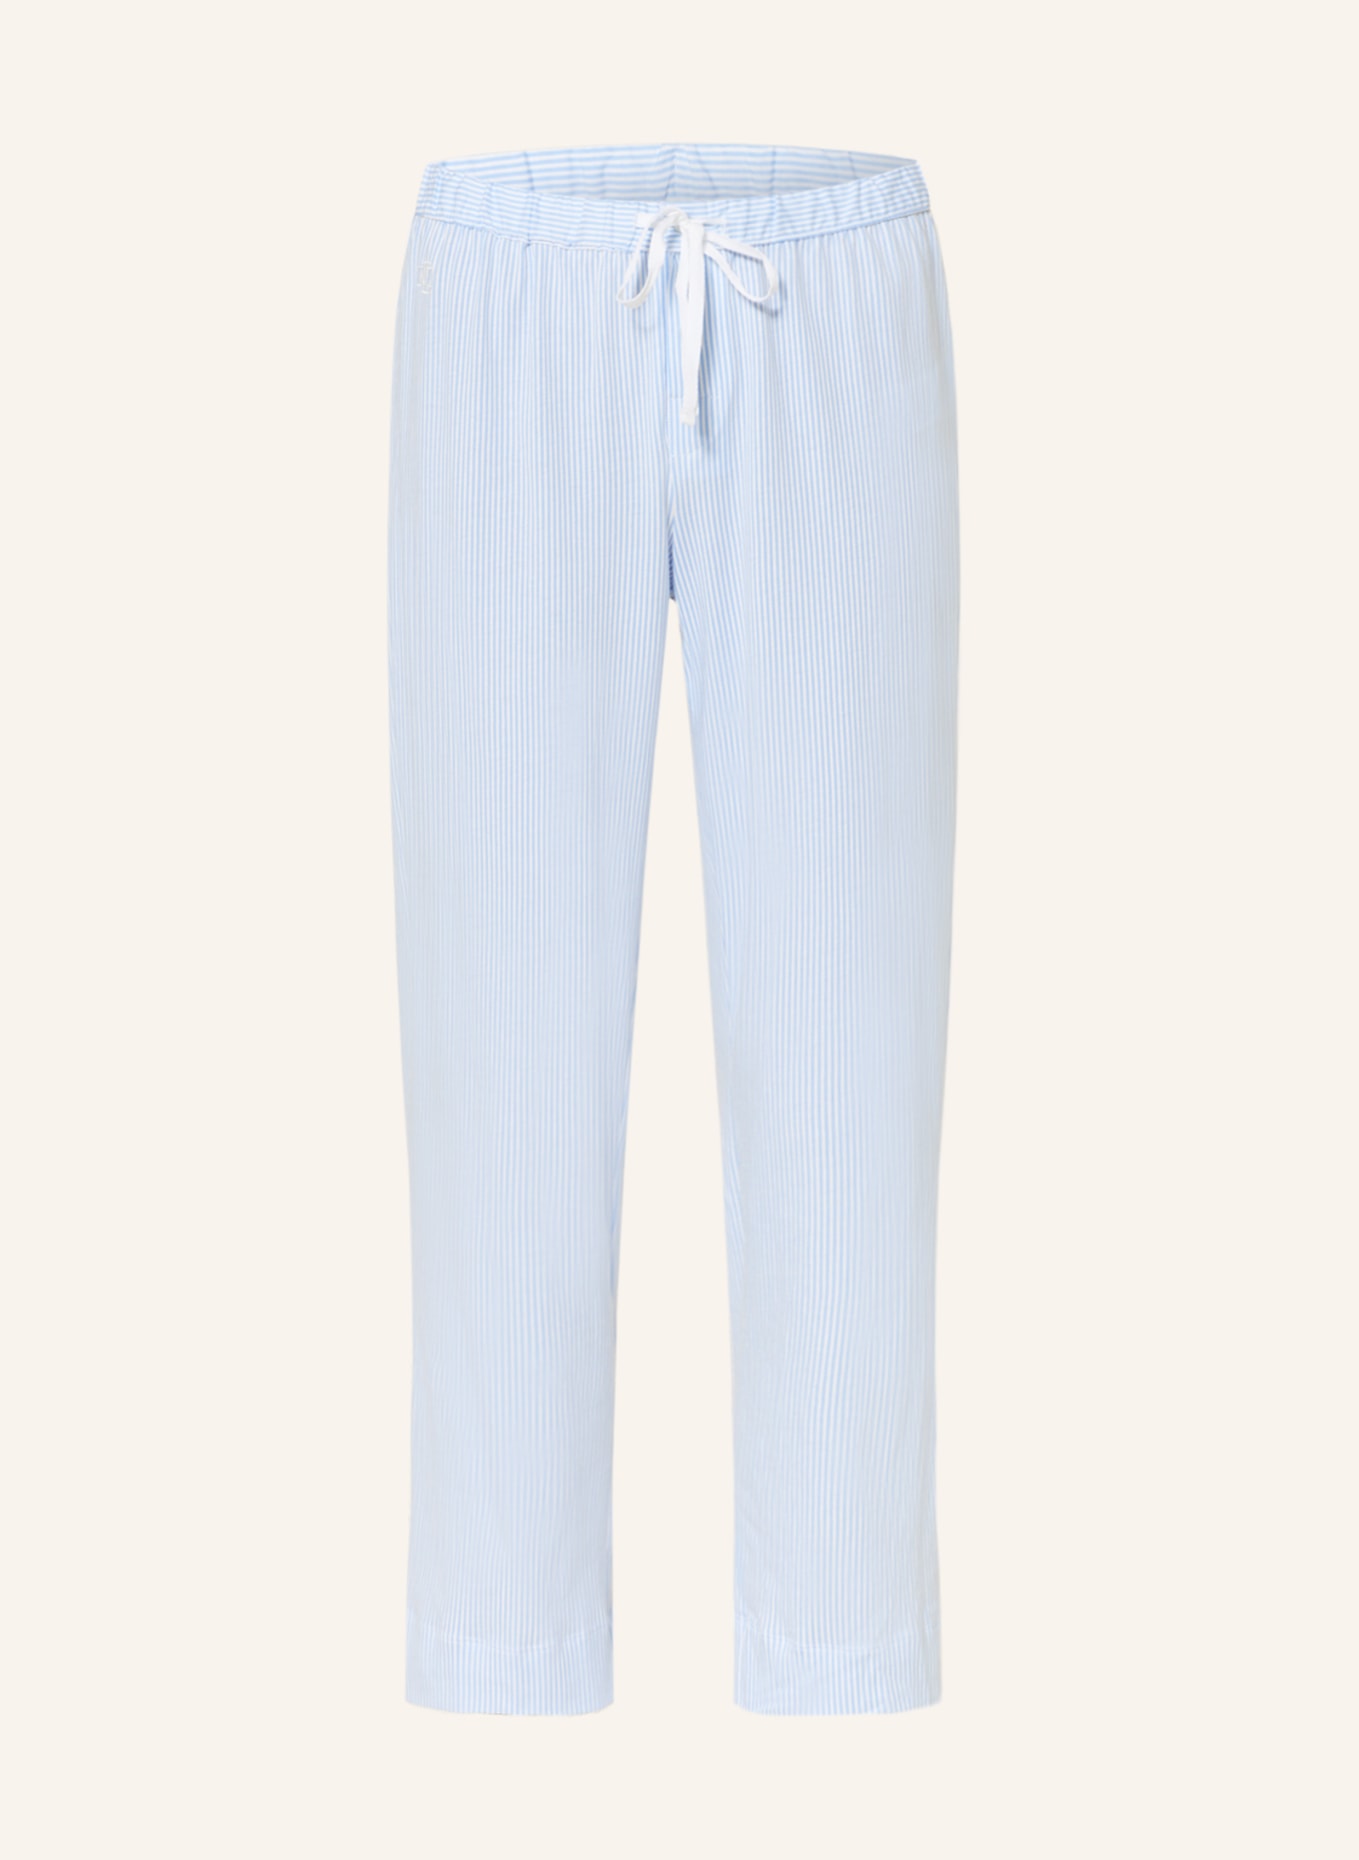 LAUREN RALPH LAUREN Pajama pants, Color: WHITE/ LIGHT BLUE (Image 1)